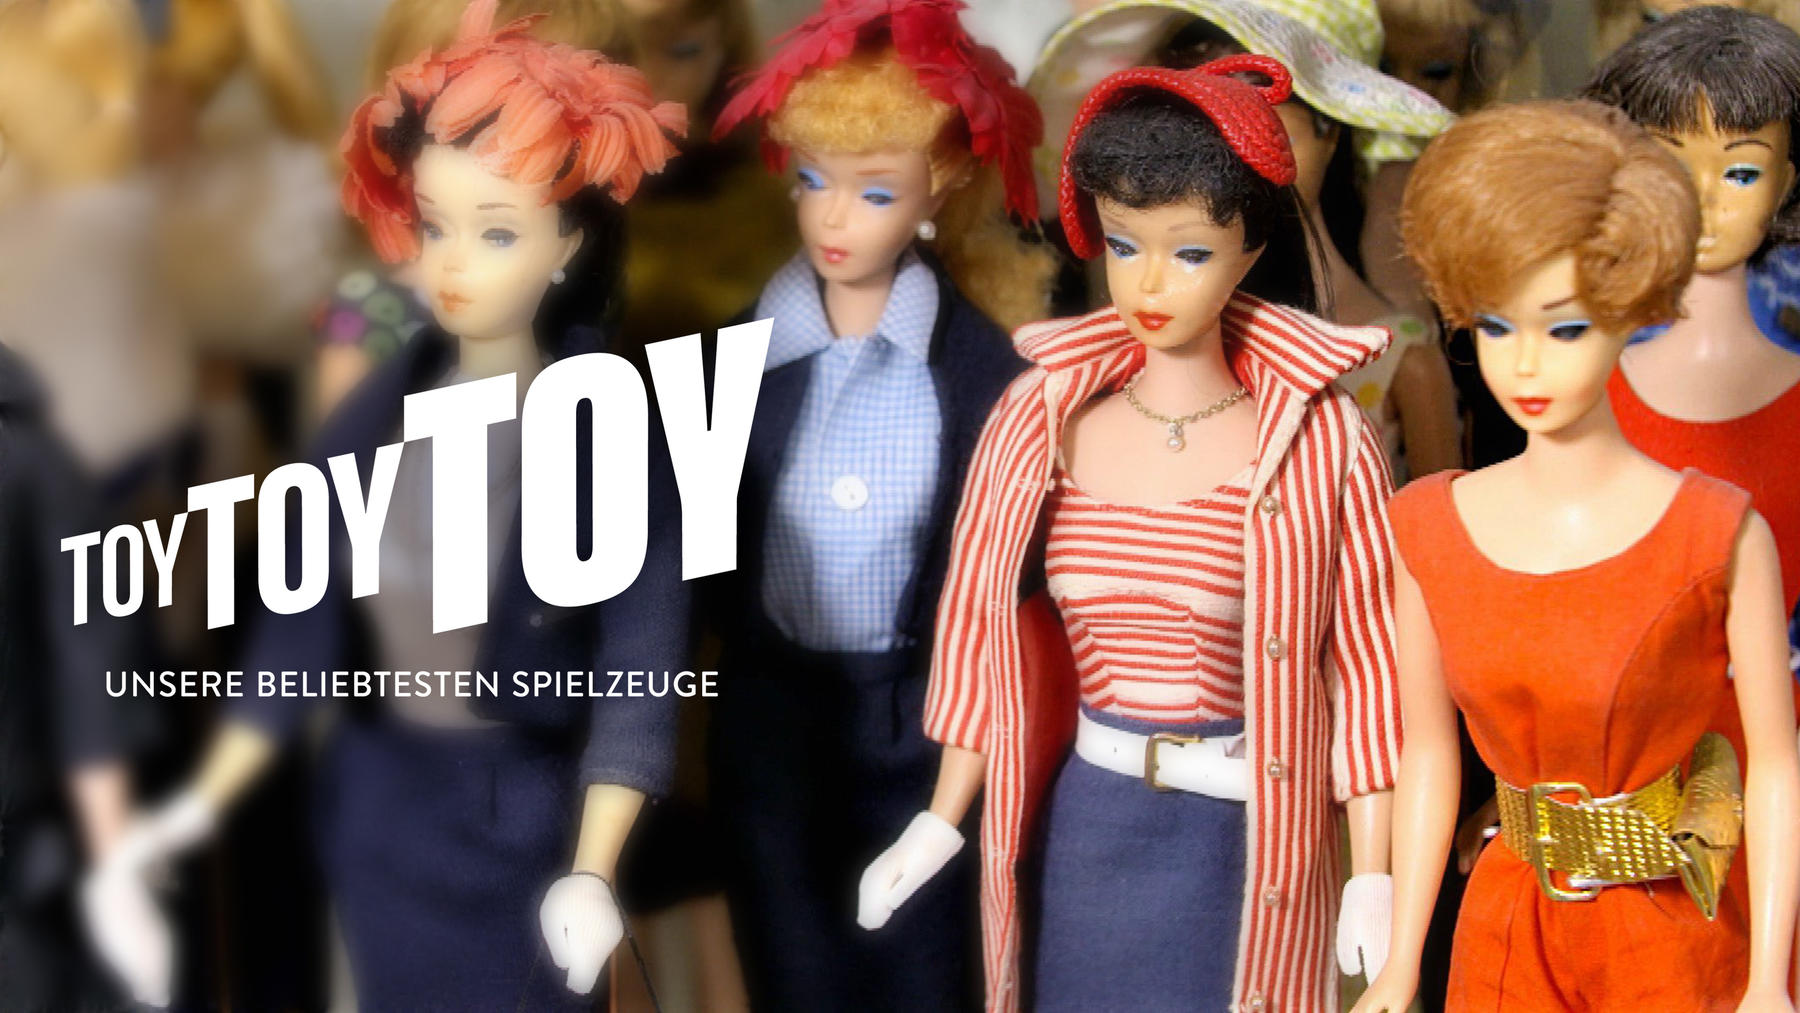 Toy, Toy, Toy - Unsere beliebtesten Spielzeuge